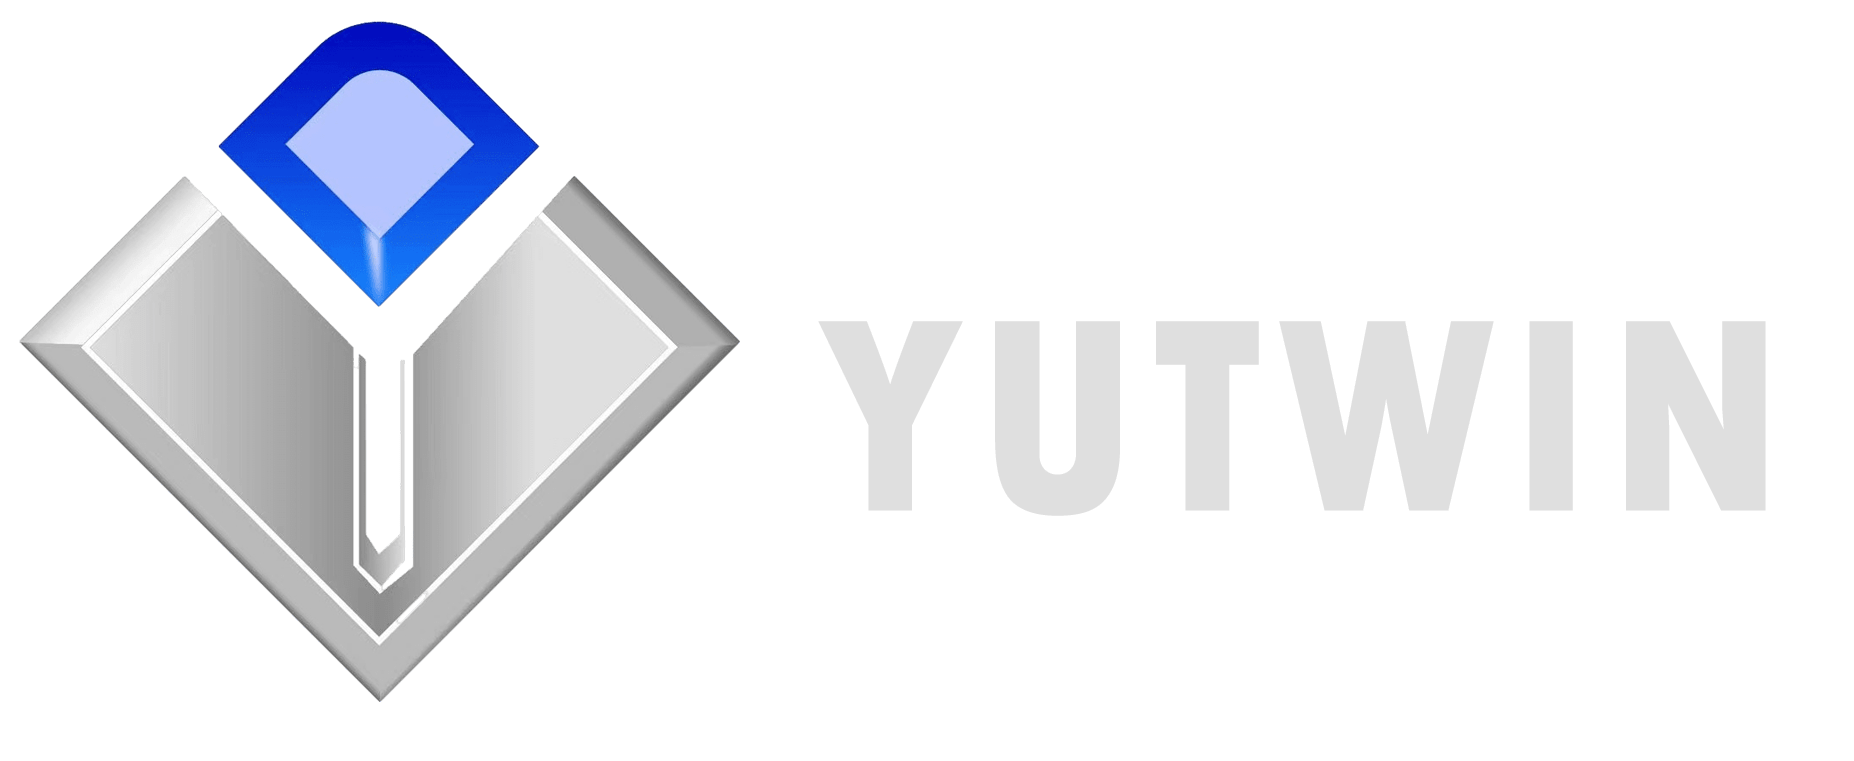 Yutwin nouveaux logos de matériaux